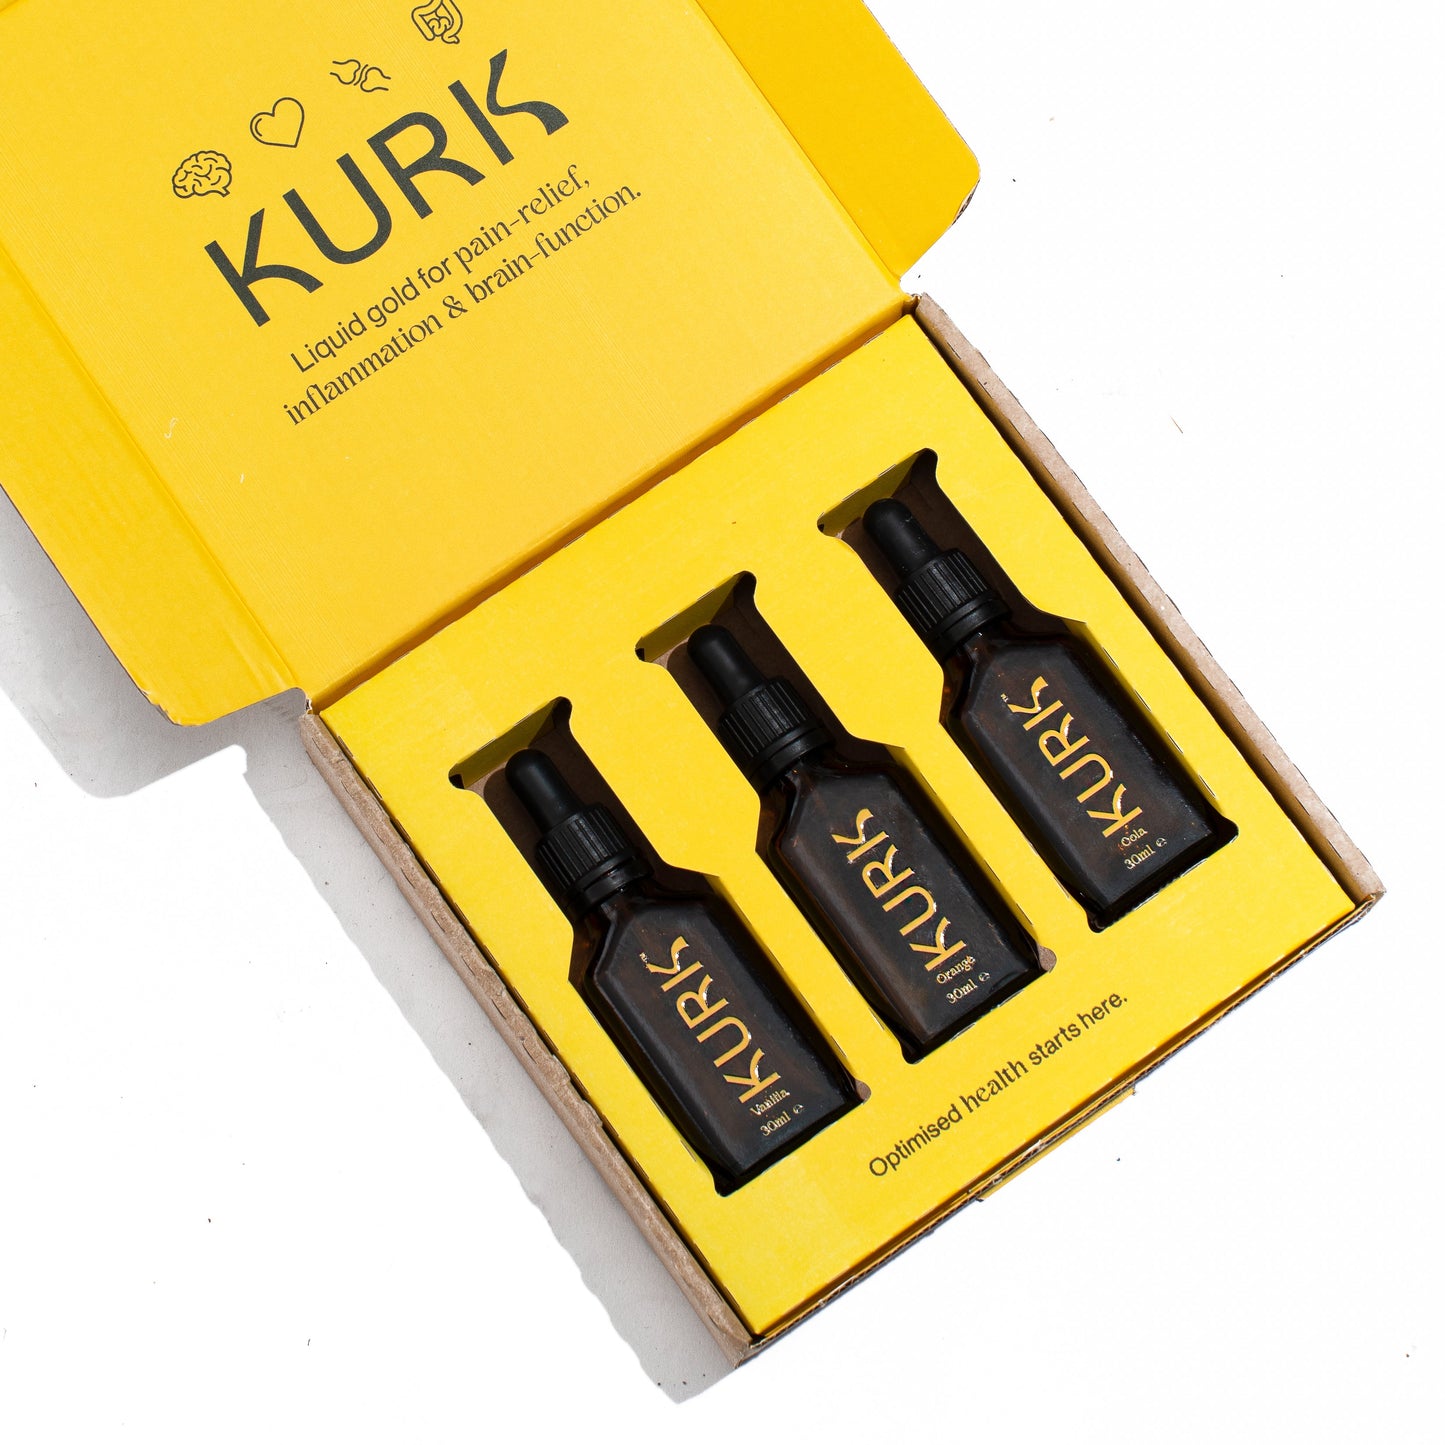 For Mum - Kurk Variety Pack - Trial